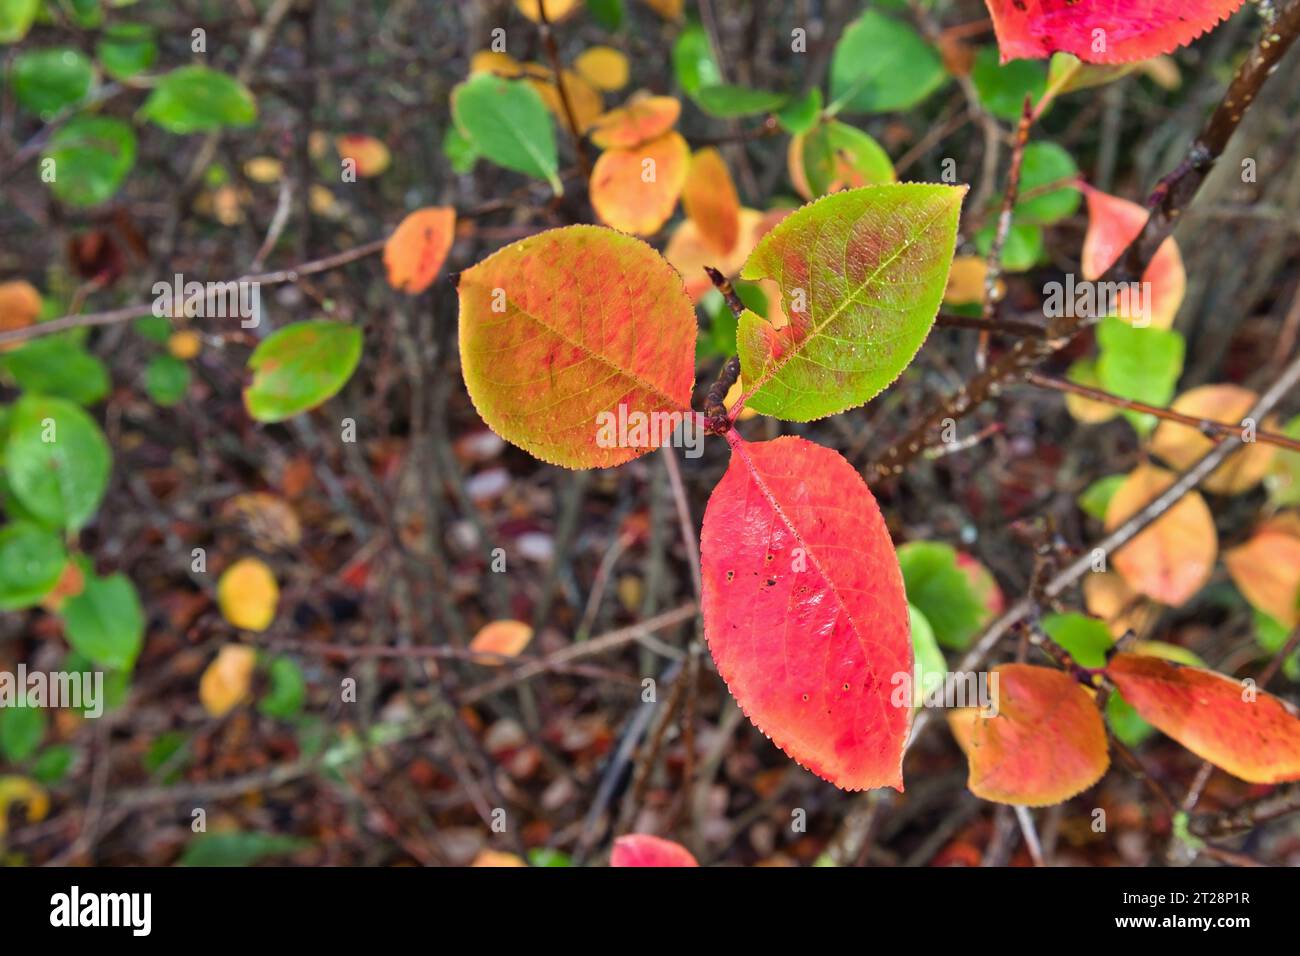 aronia prunifolia autumn leaves Stock Photo